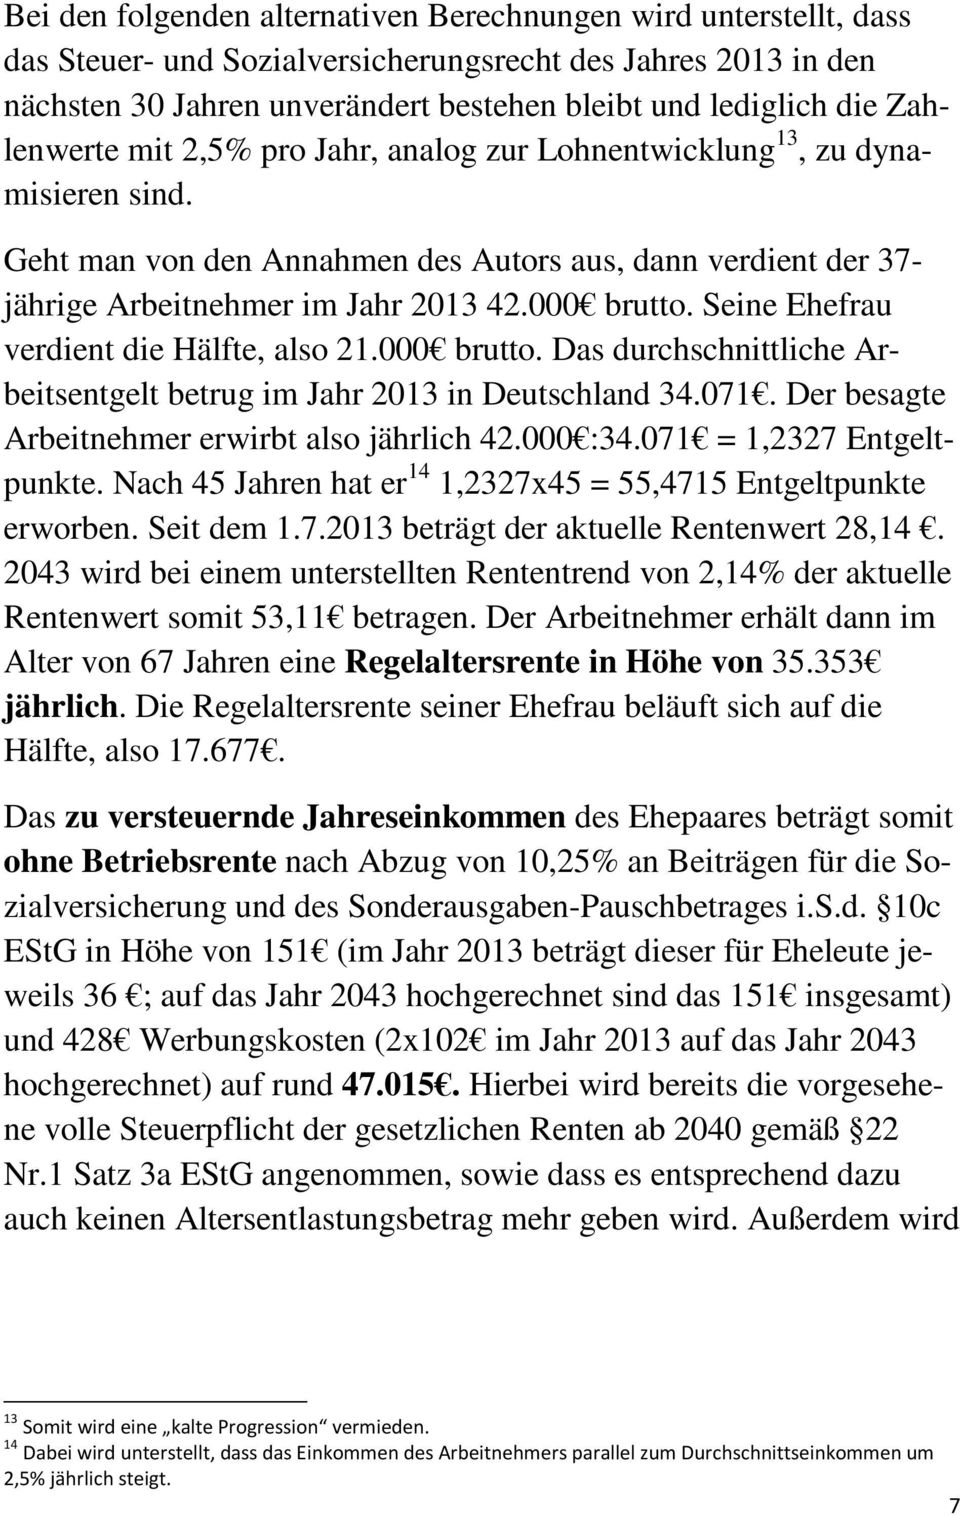 Seine Ehefrau verdient die Hälfte, also 21.000 brutto. Das durchschnittliche Arbeitsentgelt betrug im Jahr 2013 in Deutschland 34.071. Der besagte Arbeitnehmer erwirbt also jährlich 42.000 :34.